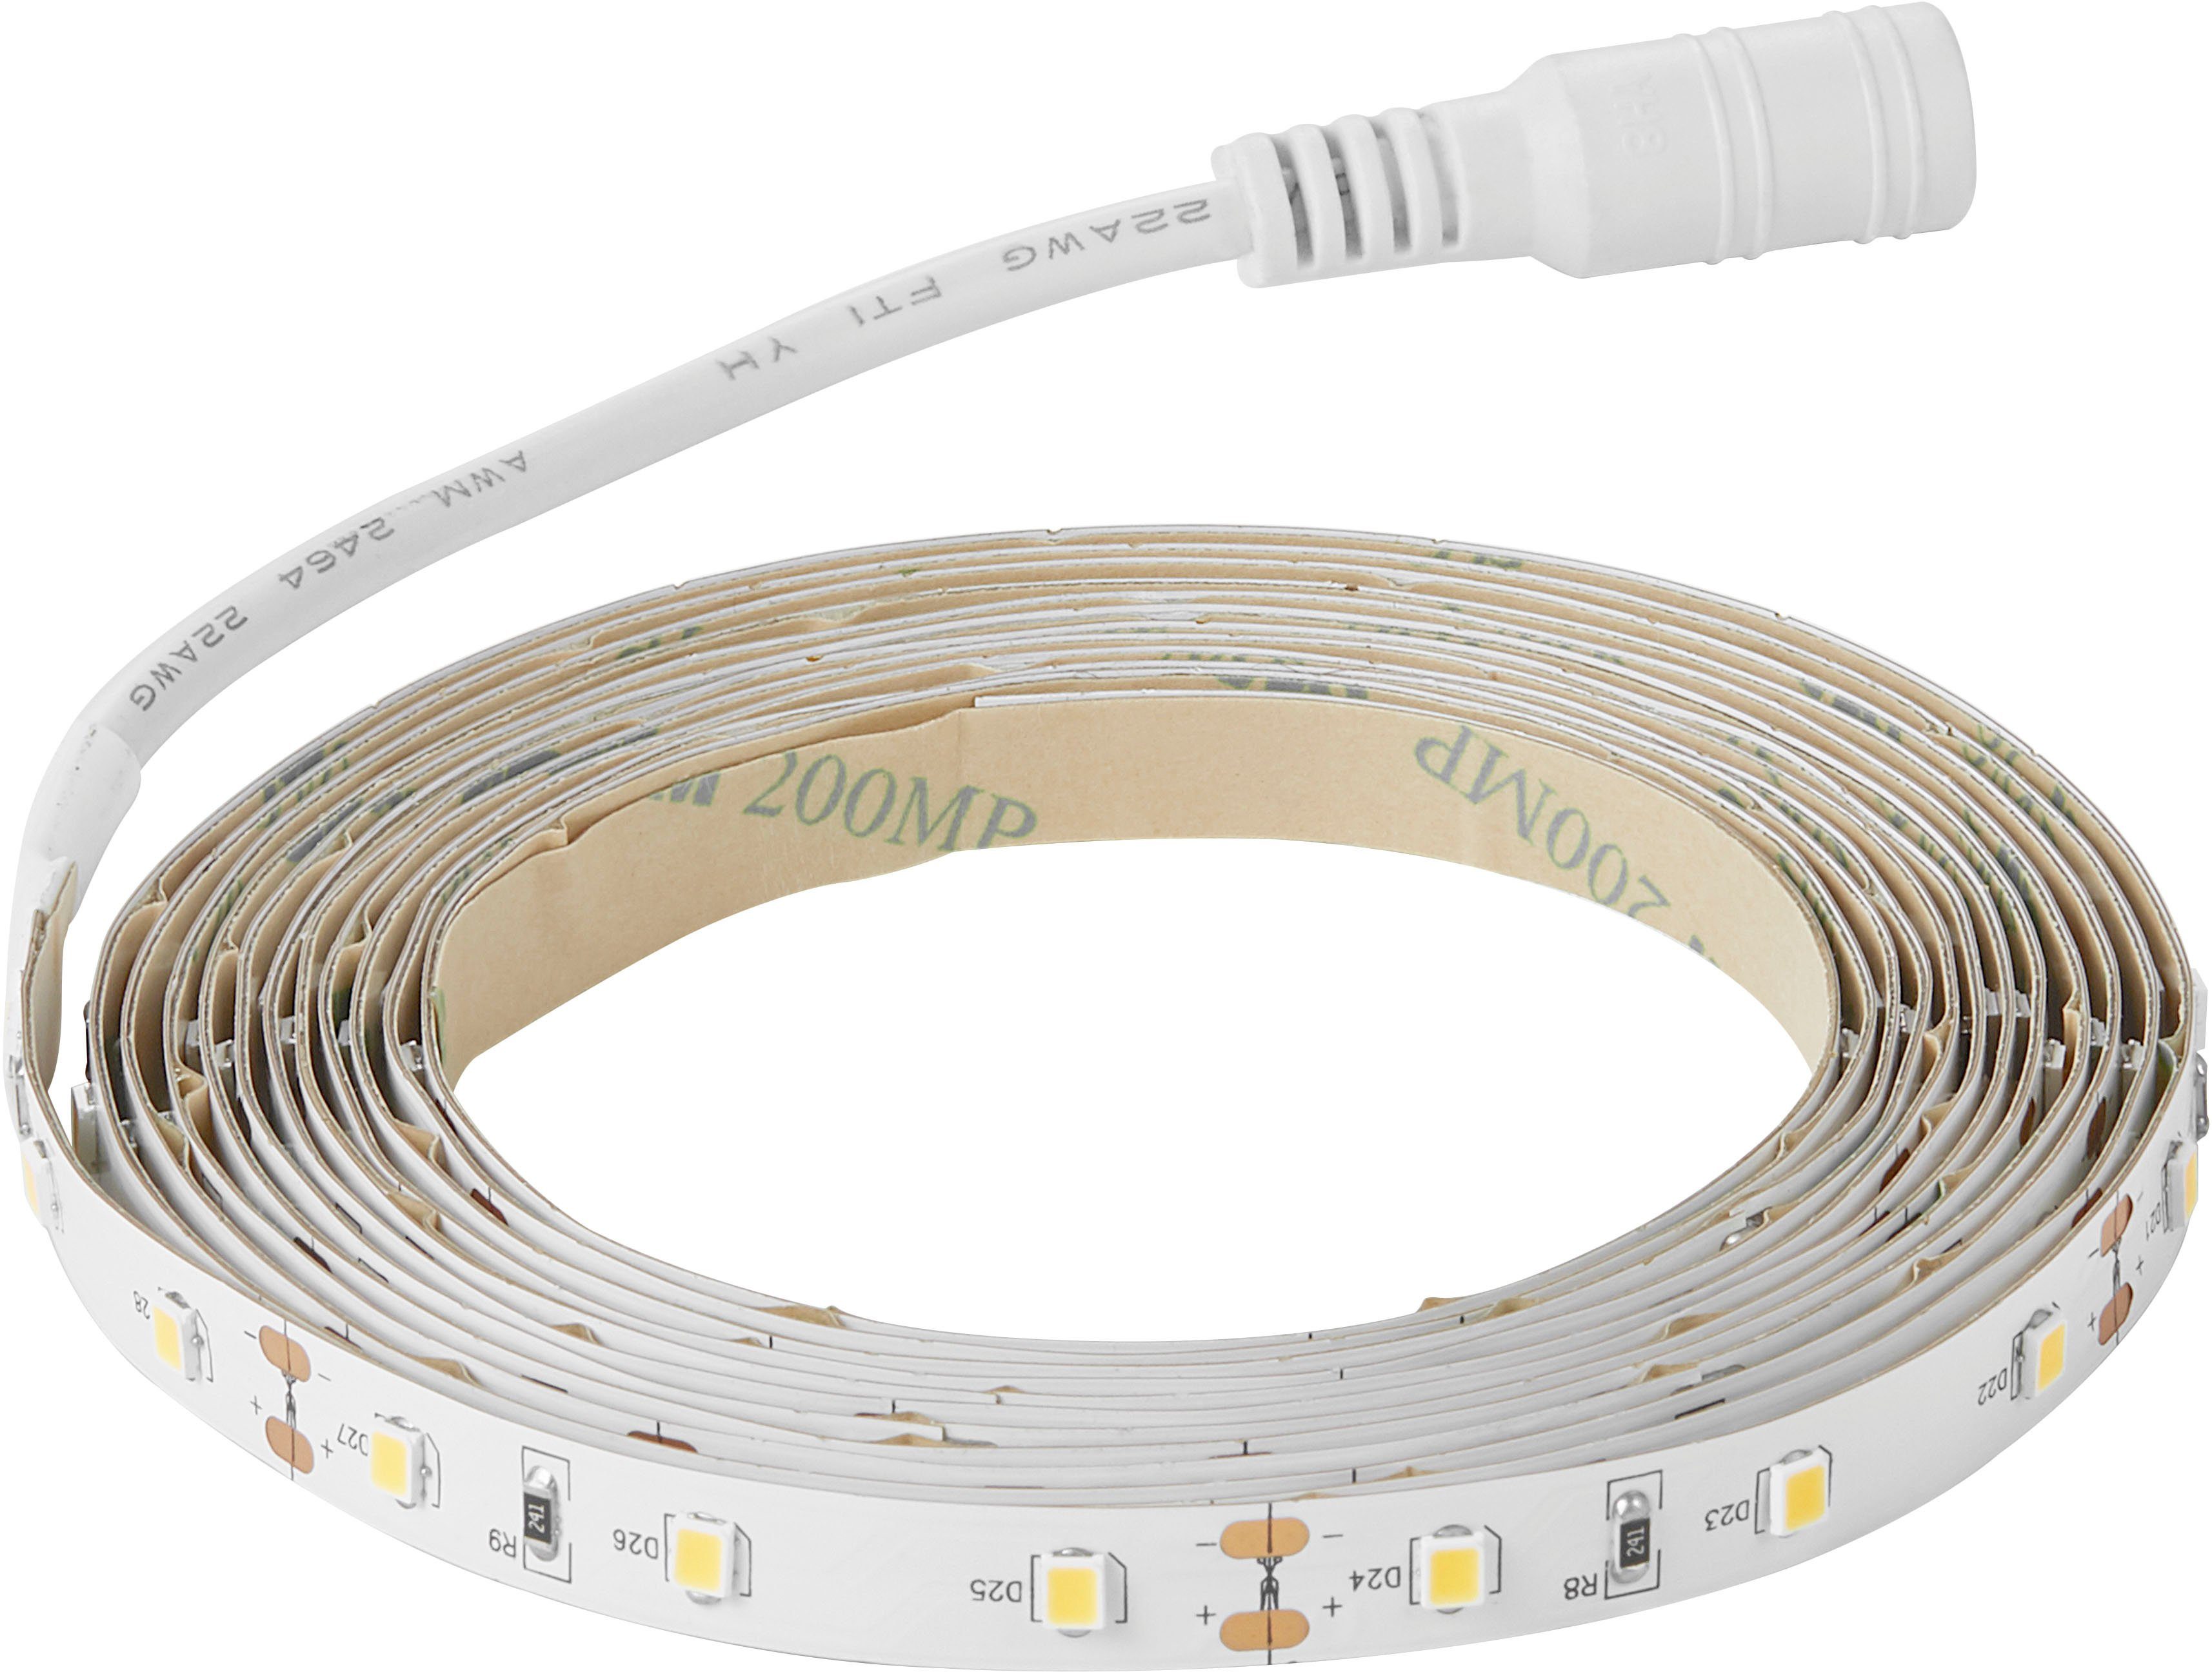 Nordlux LED – Klebeband wiederverwendbar Stripe Streifen, Einfach Ledstrip, anzubringen auf